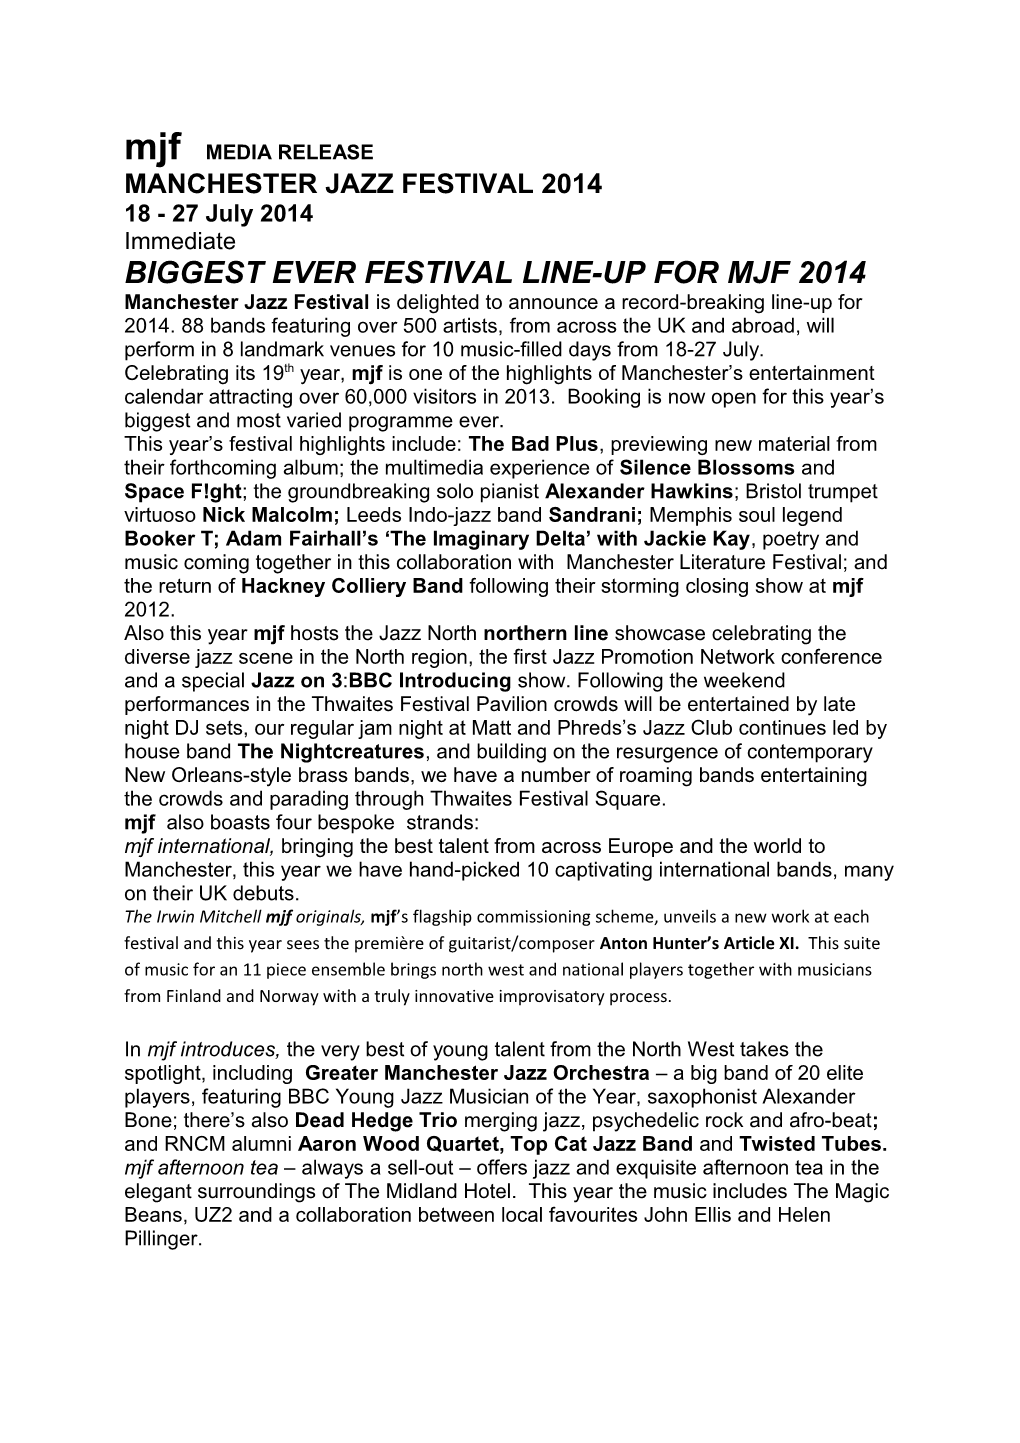 Biggest Ever Festival Line-Up for Mjf 2014